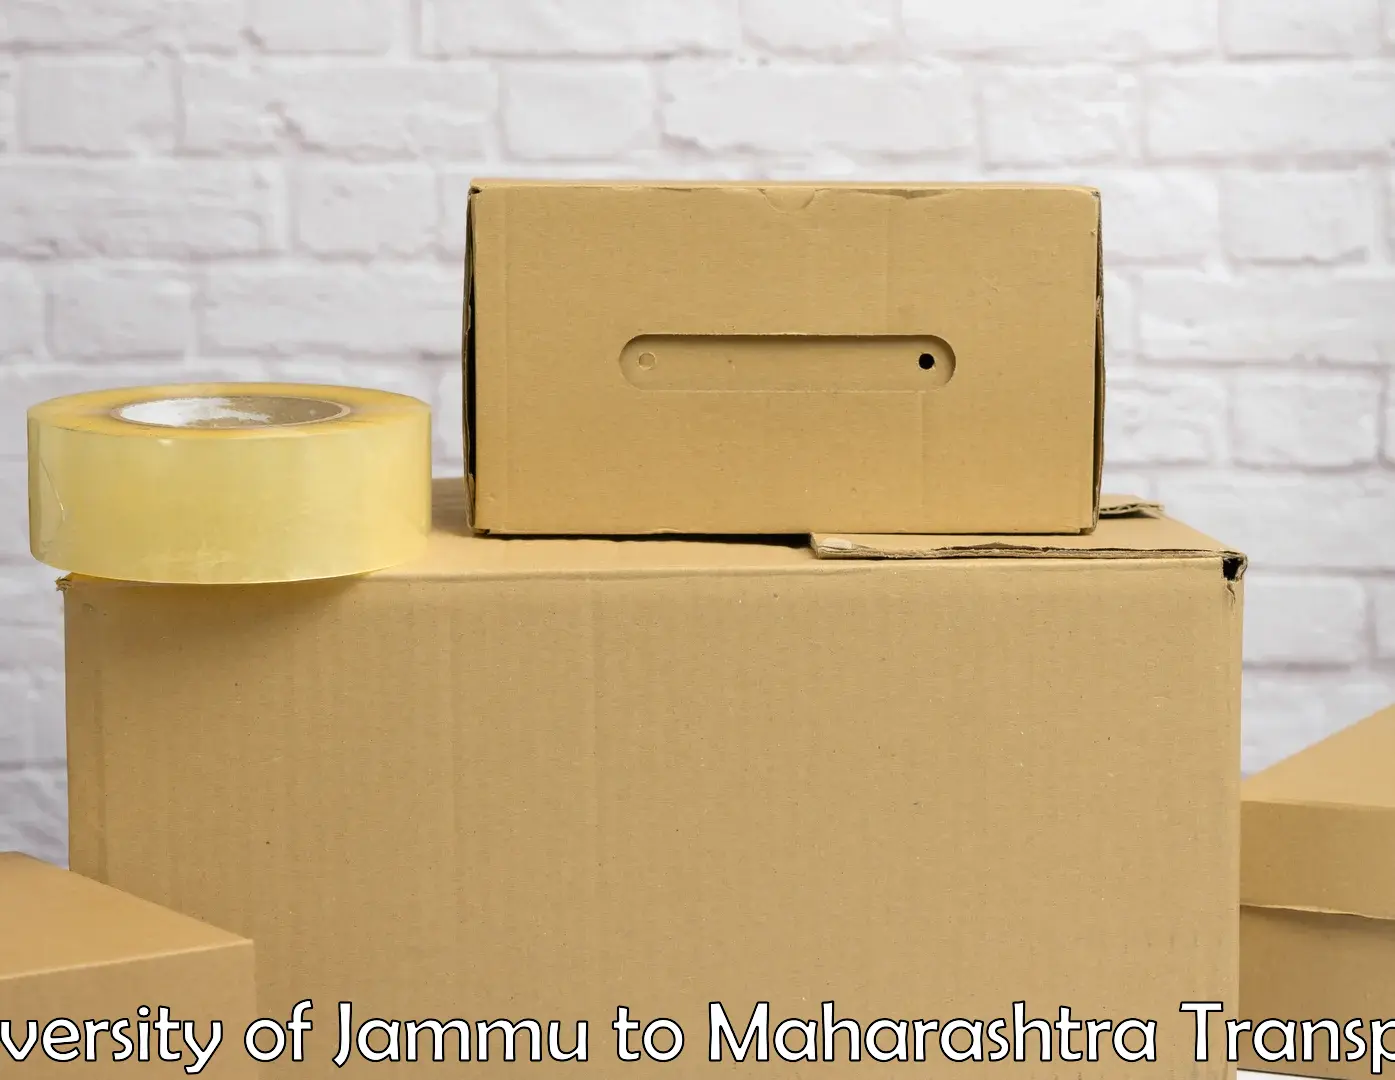 Daily parcel service transport University of Jammu to Raver